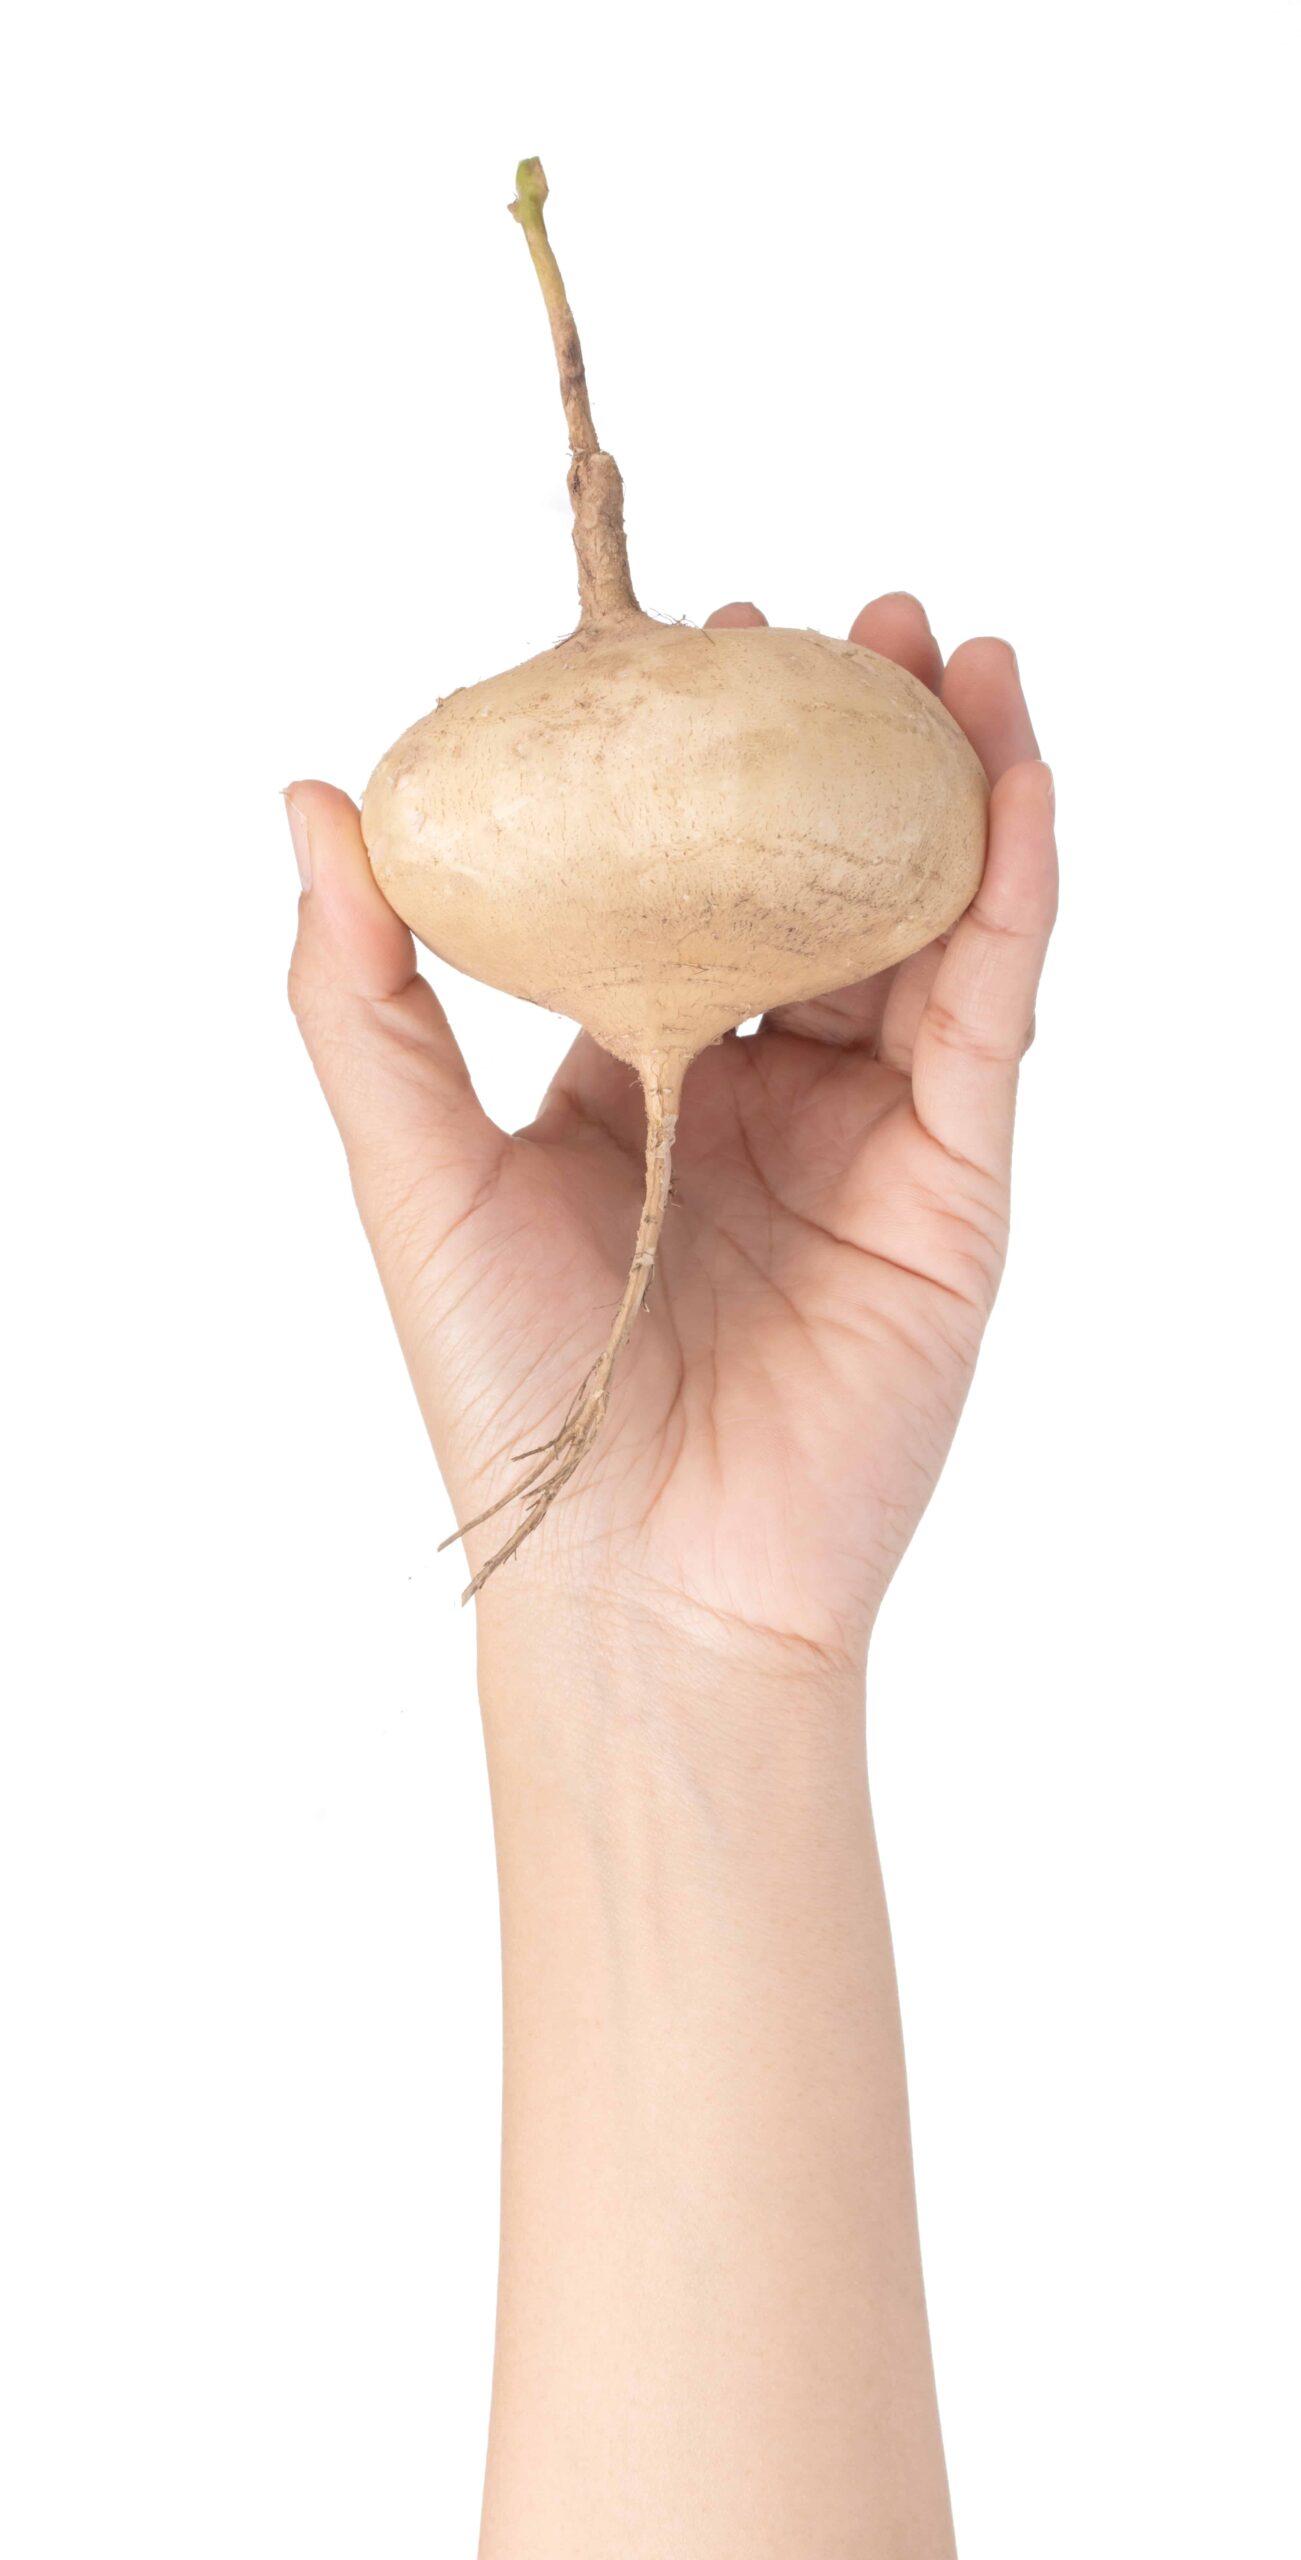 hand holding jicama isolated on white background